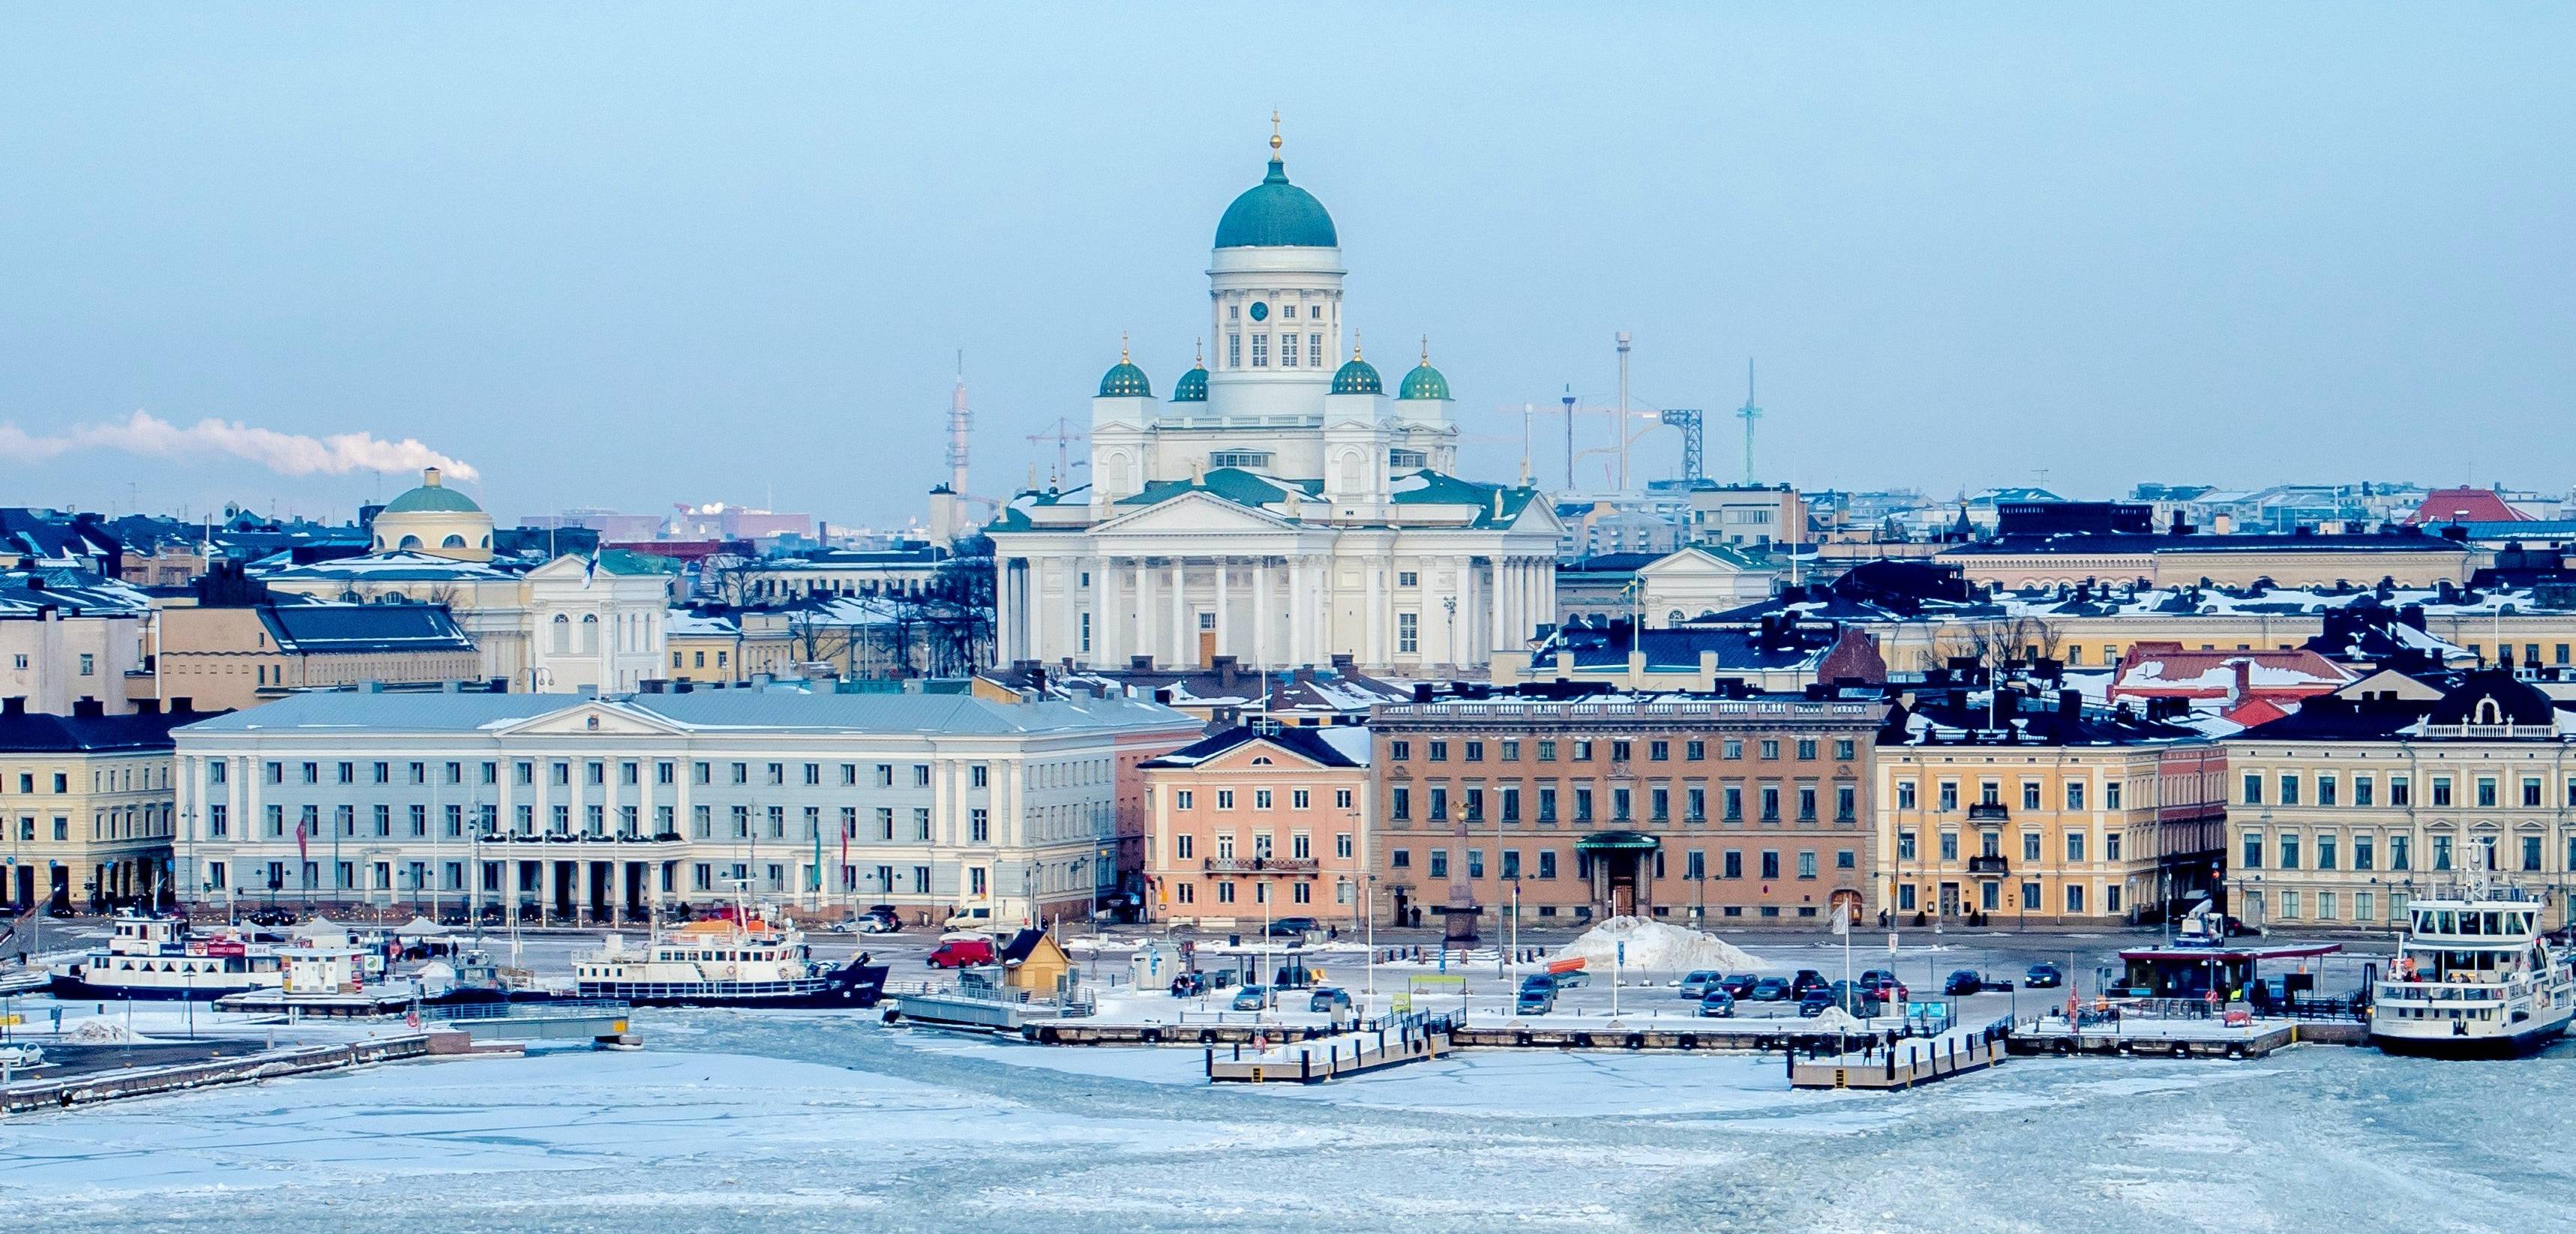 Helsinkis Winterpracht